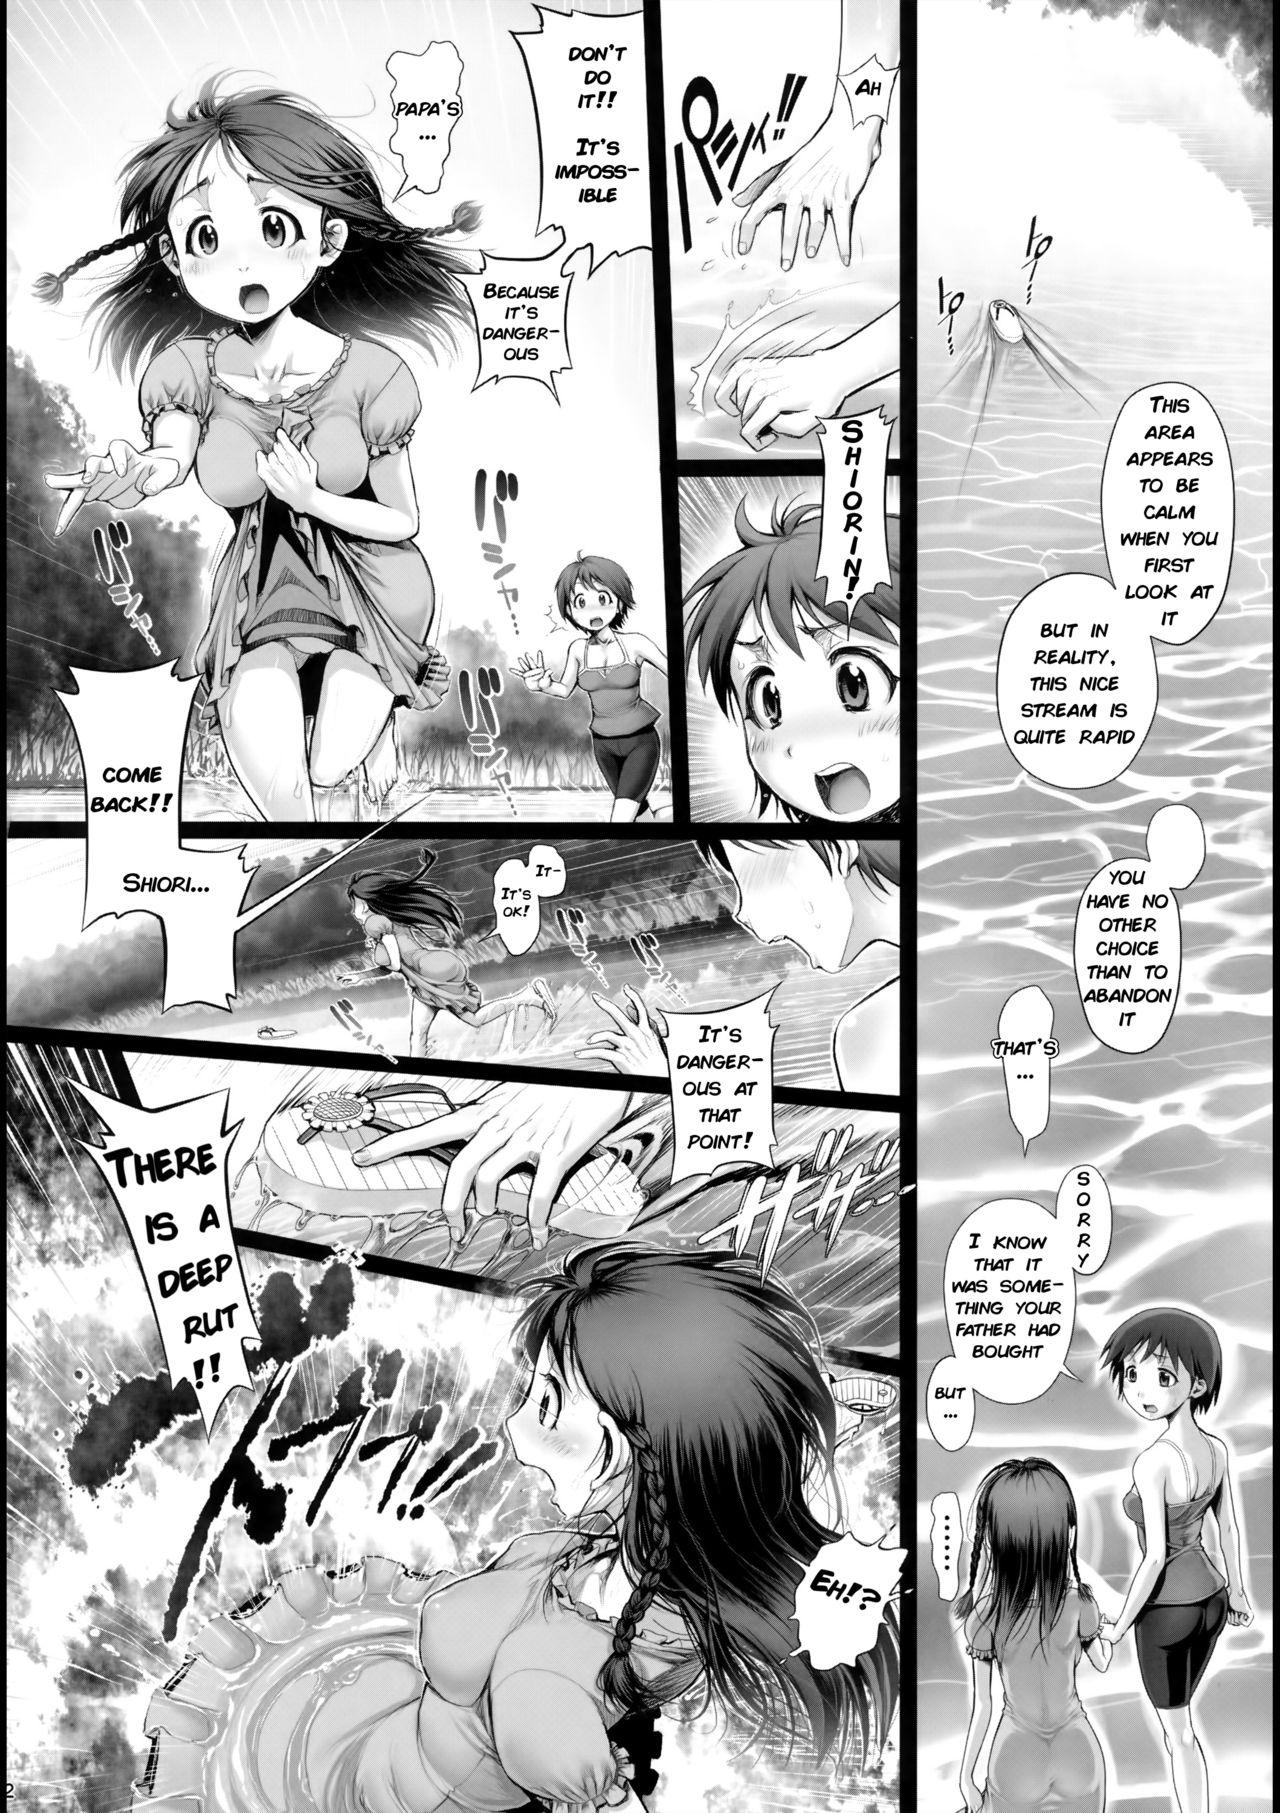 Pussy Sex Angel Crisis 3 - Shizukana Kohan no Mori no Kage kara - Original Exhibitionist - Page 3